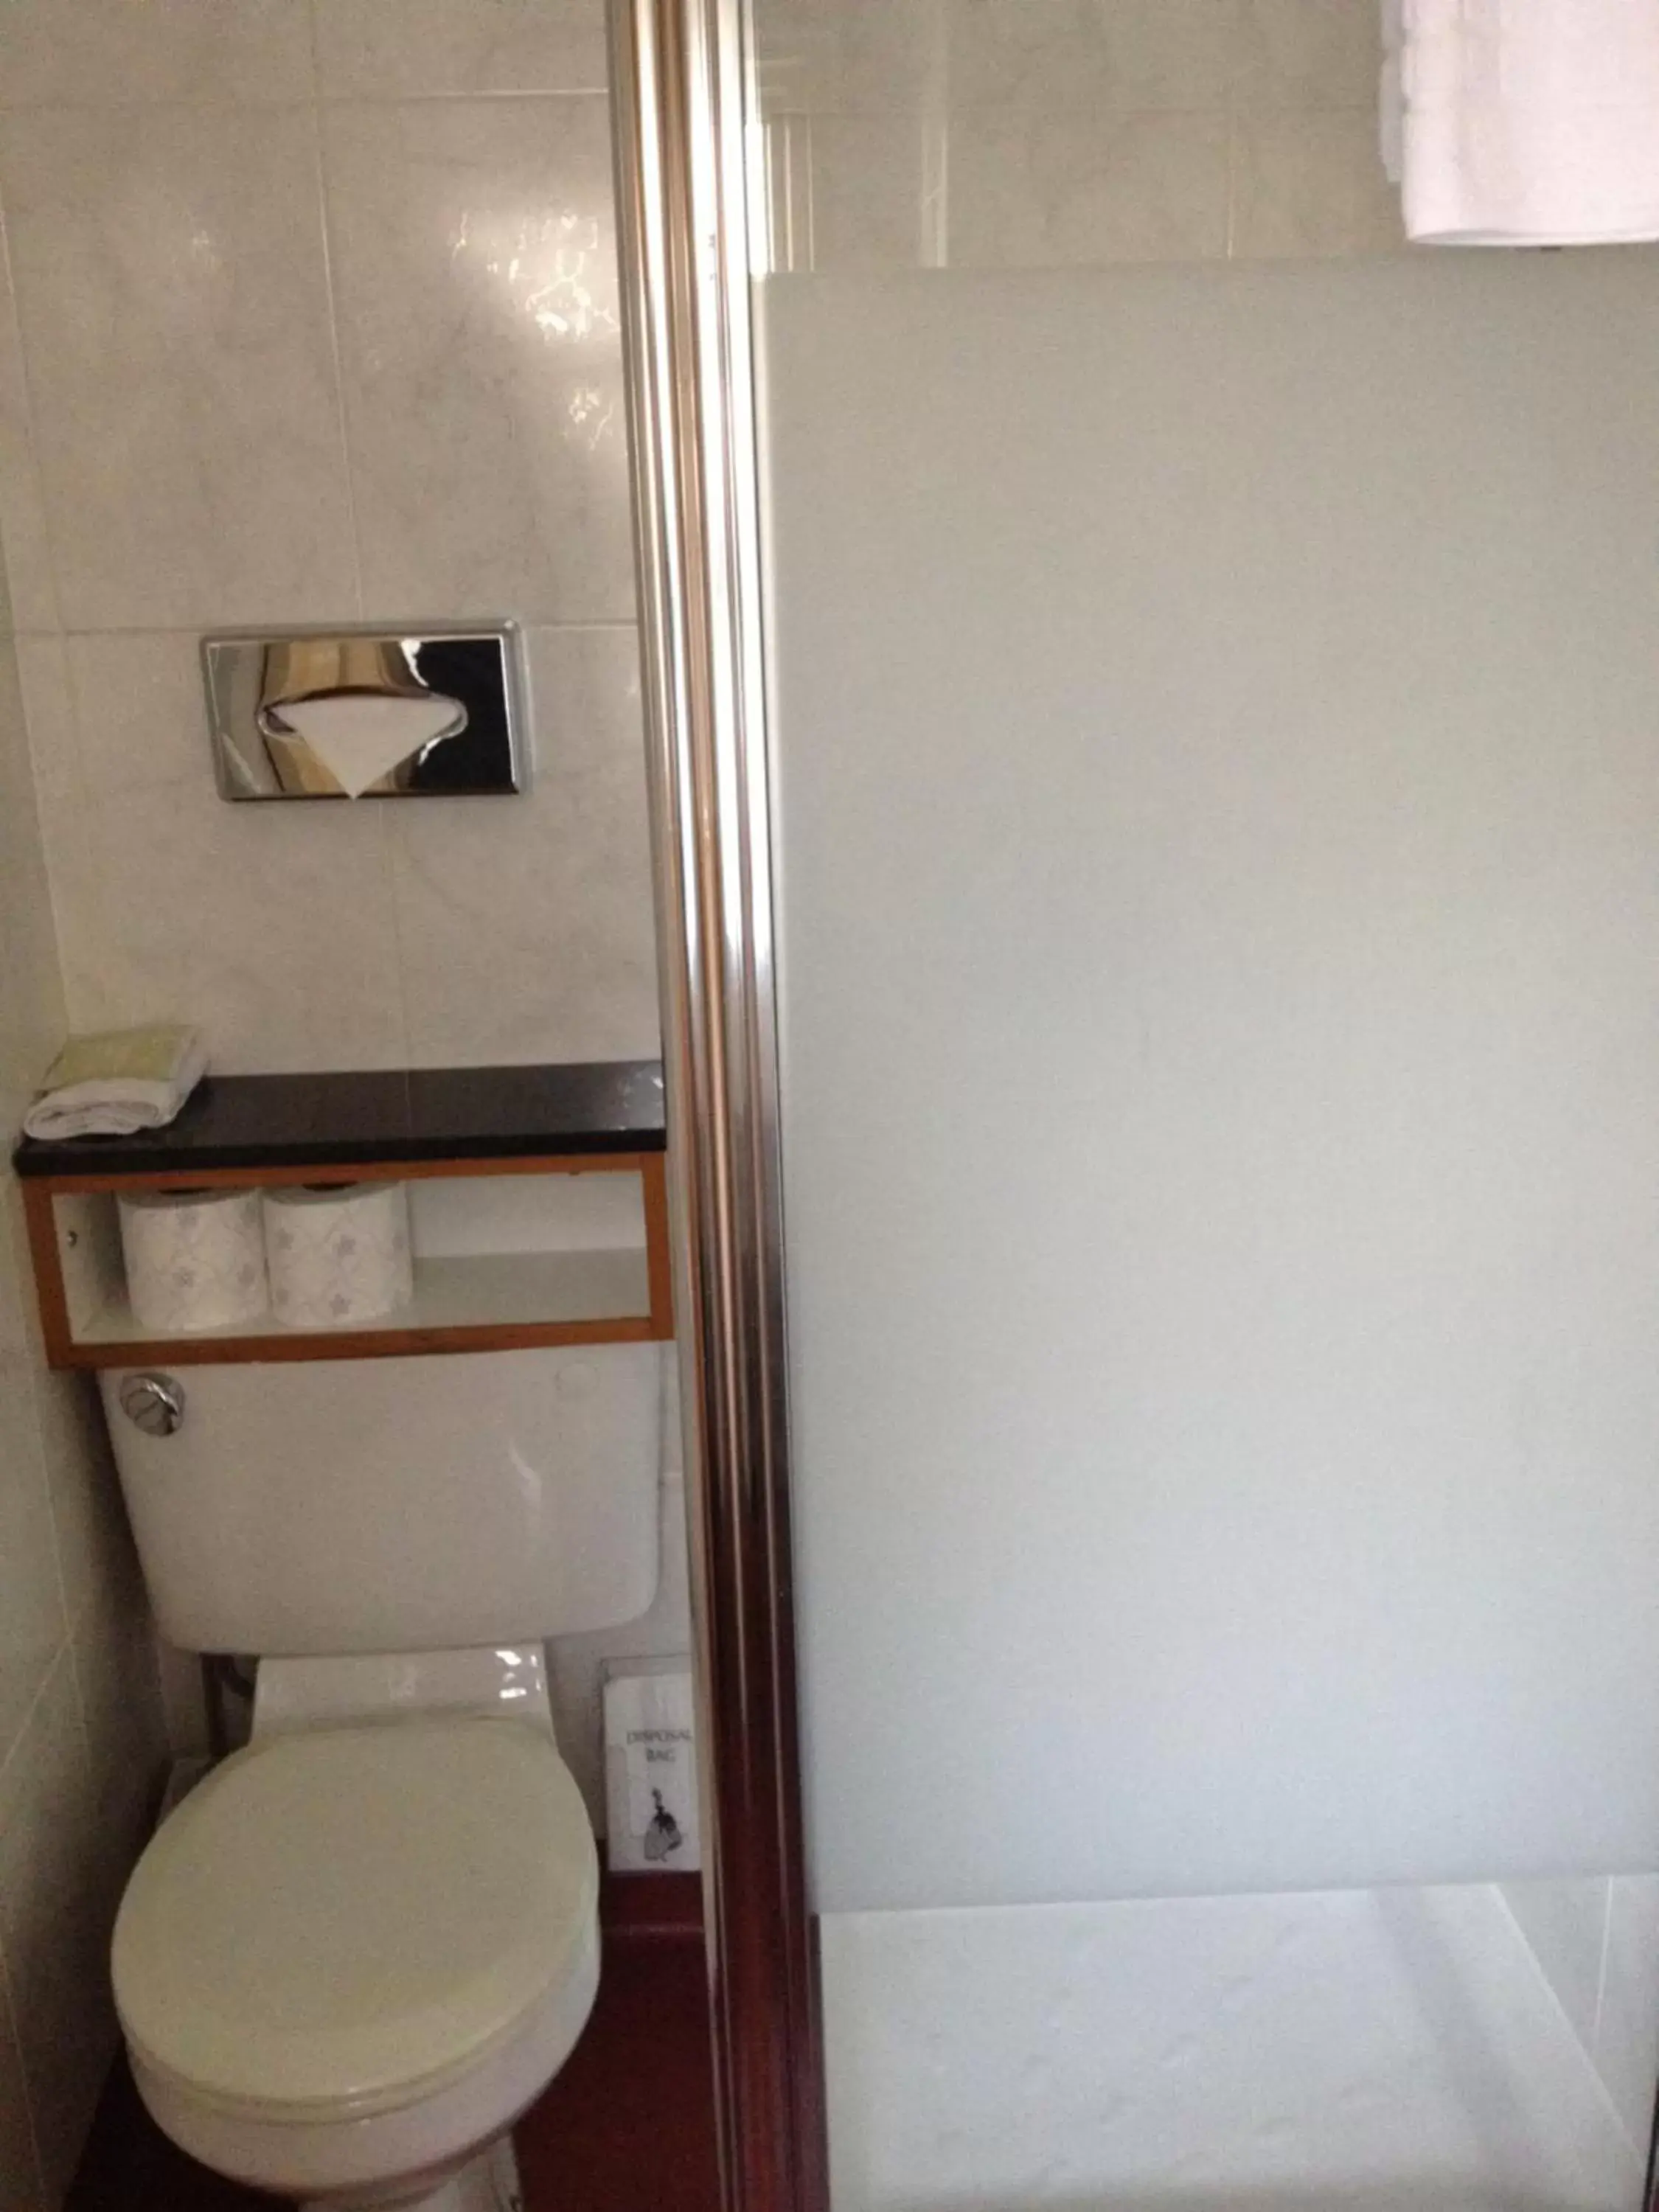 Toilet, Bathroom in Morgan Hotel